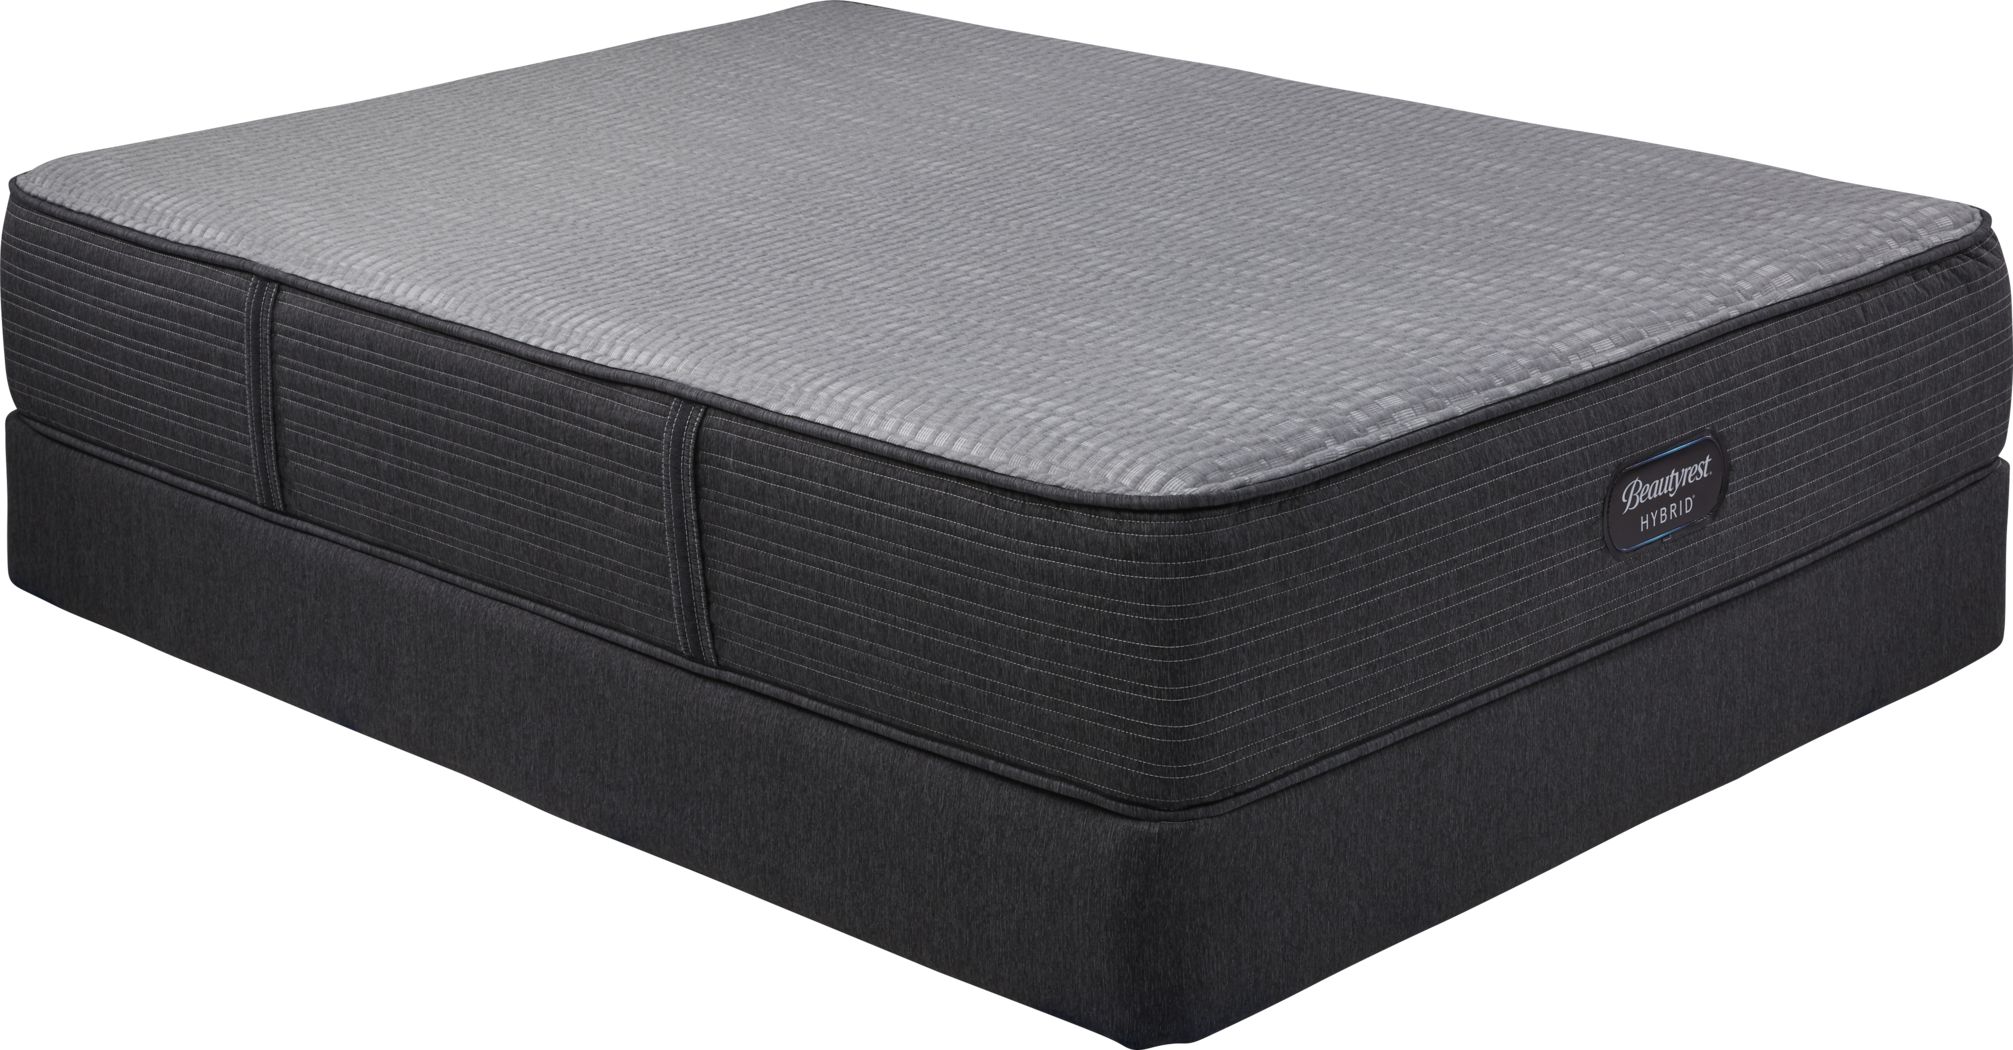 beautyrest hybrid pemberton extra firm mattress review